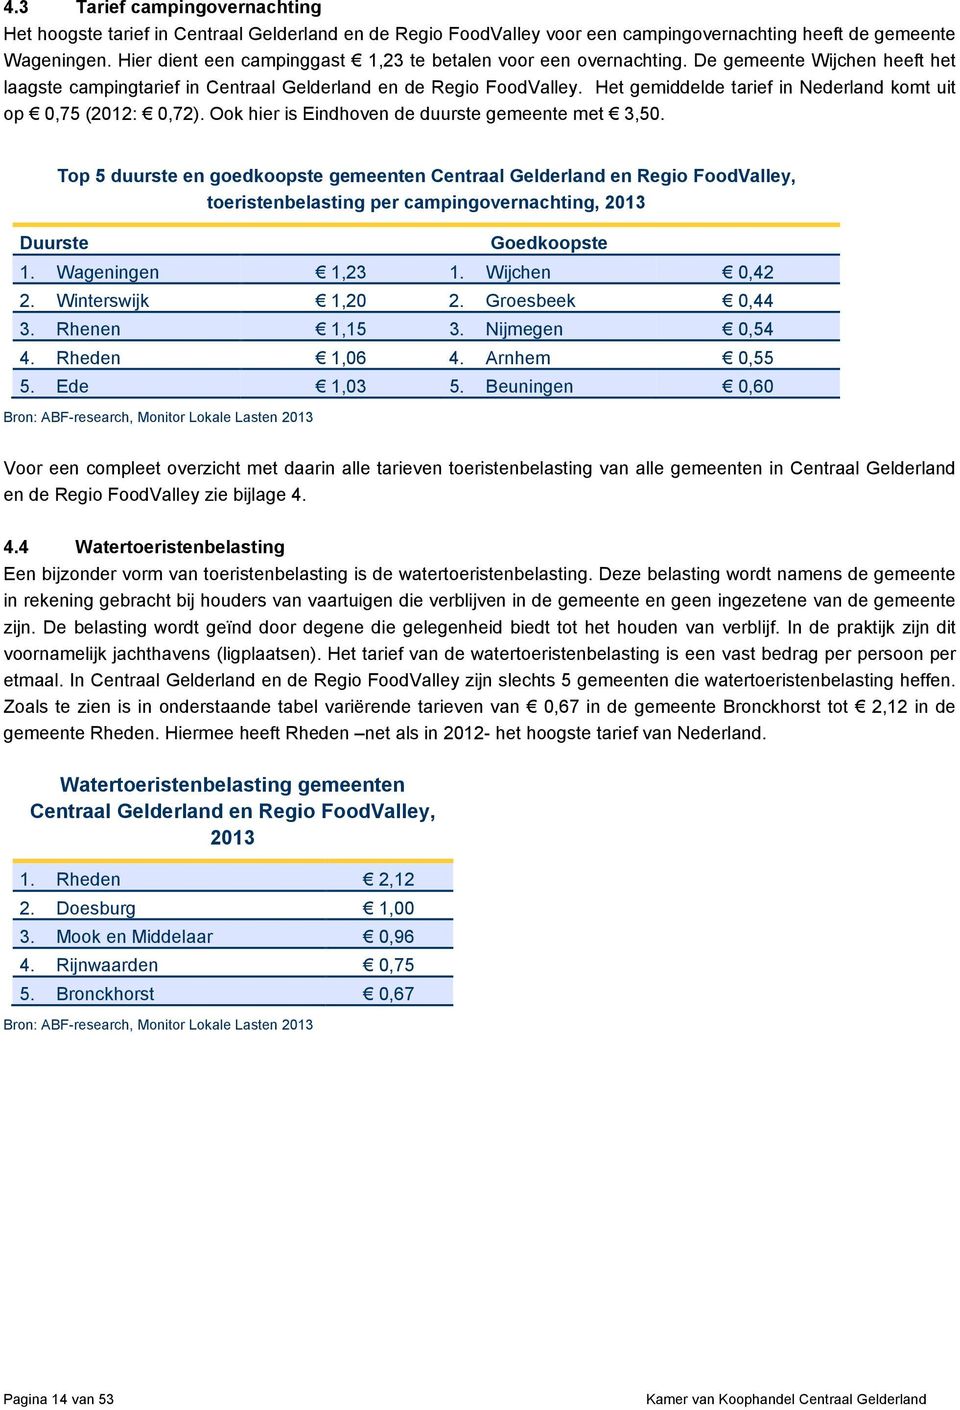 Het gemiddelde tarief in Nederland komt uit op 0,75 (2012: 0,72). Ook hier is Eindhoven de duurste gemeente met 3,50.